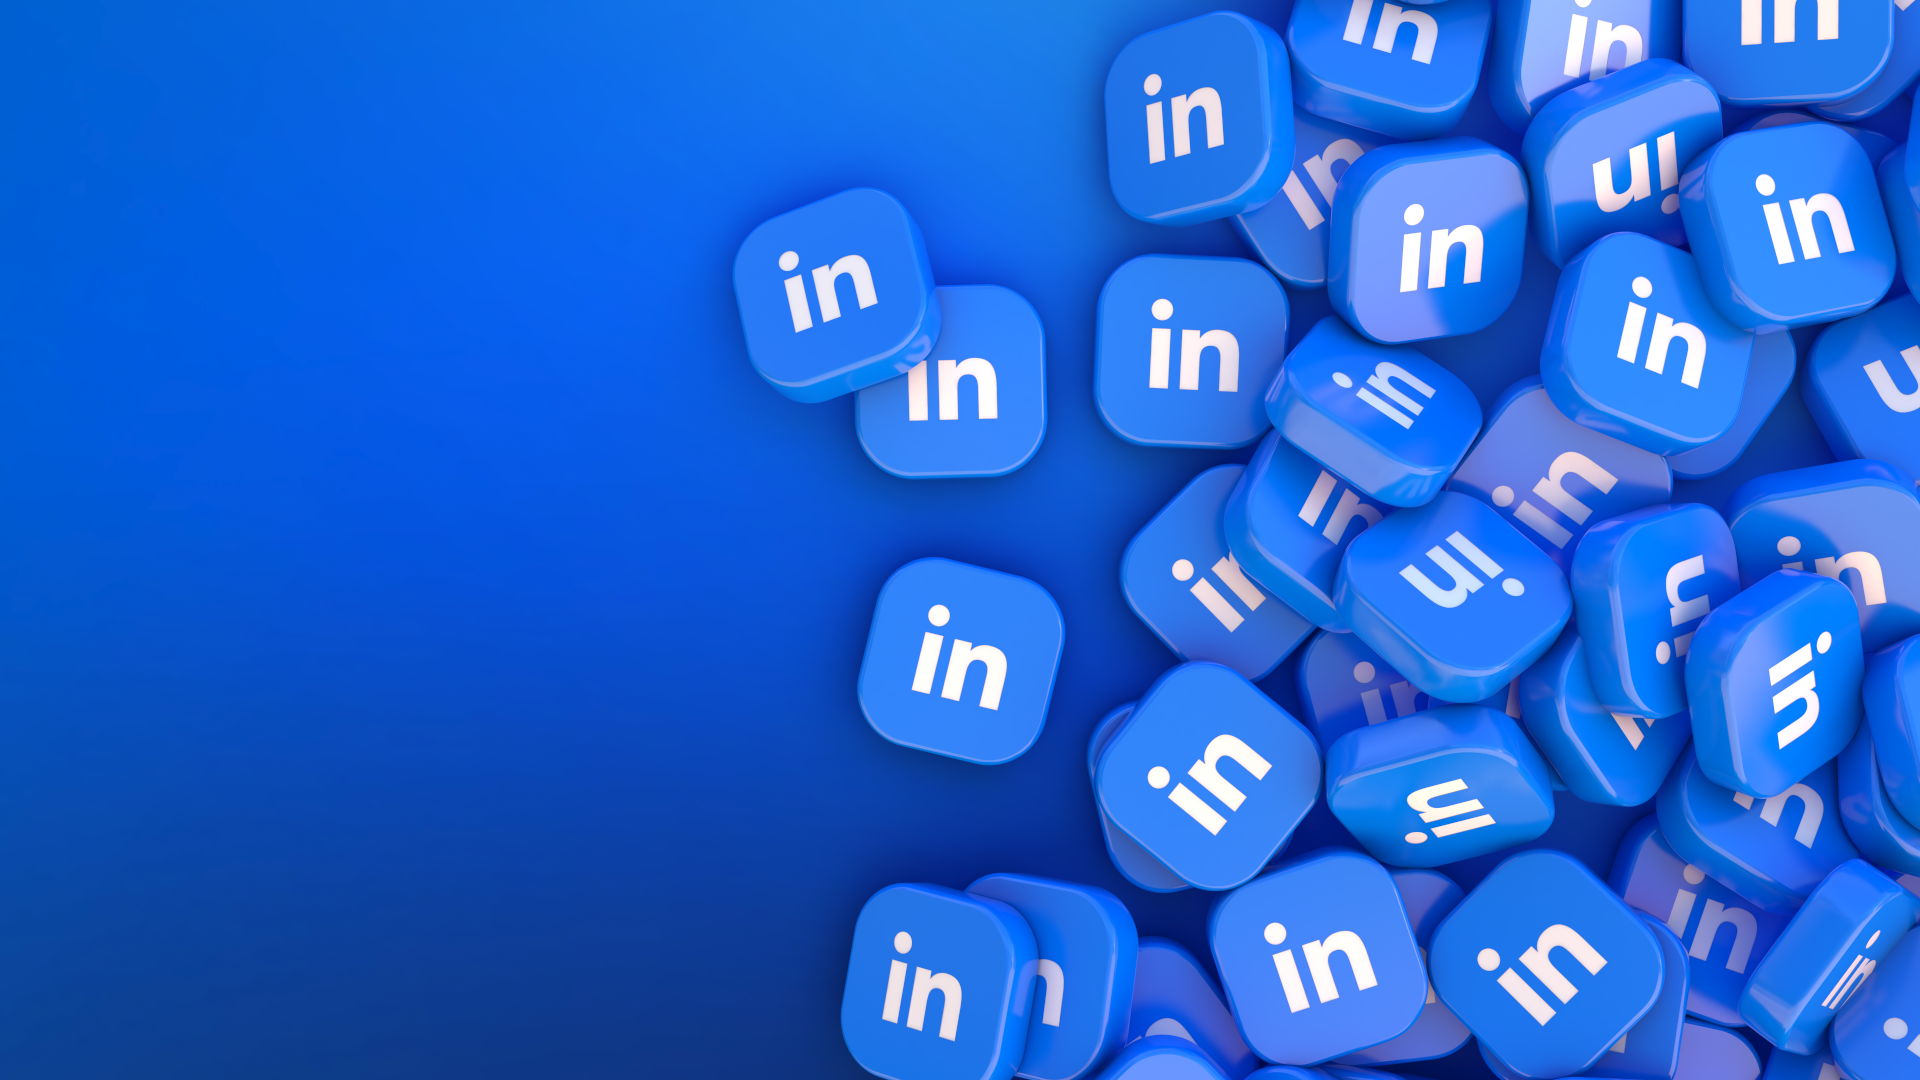 LinkedIn Ads – Come far emergere il tuo brand grazie all’Advertising?